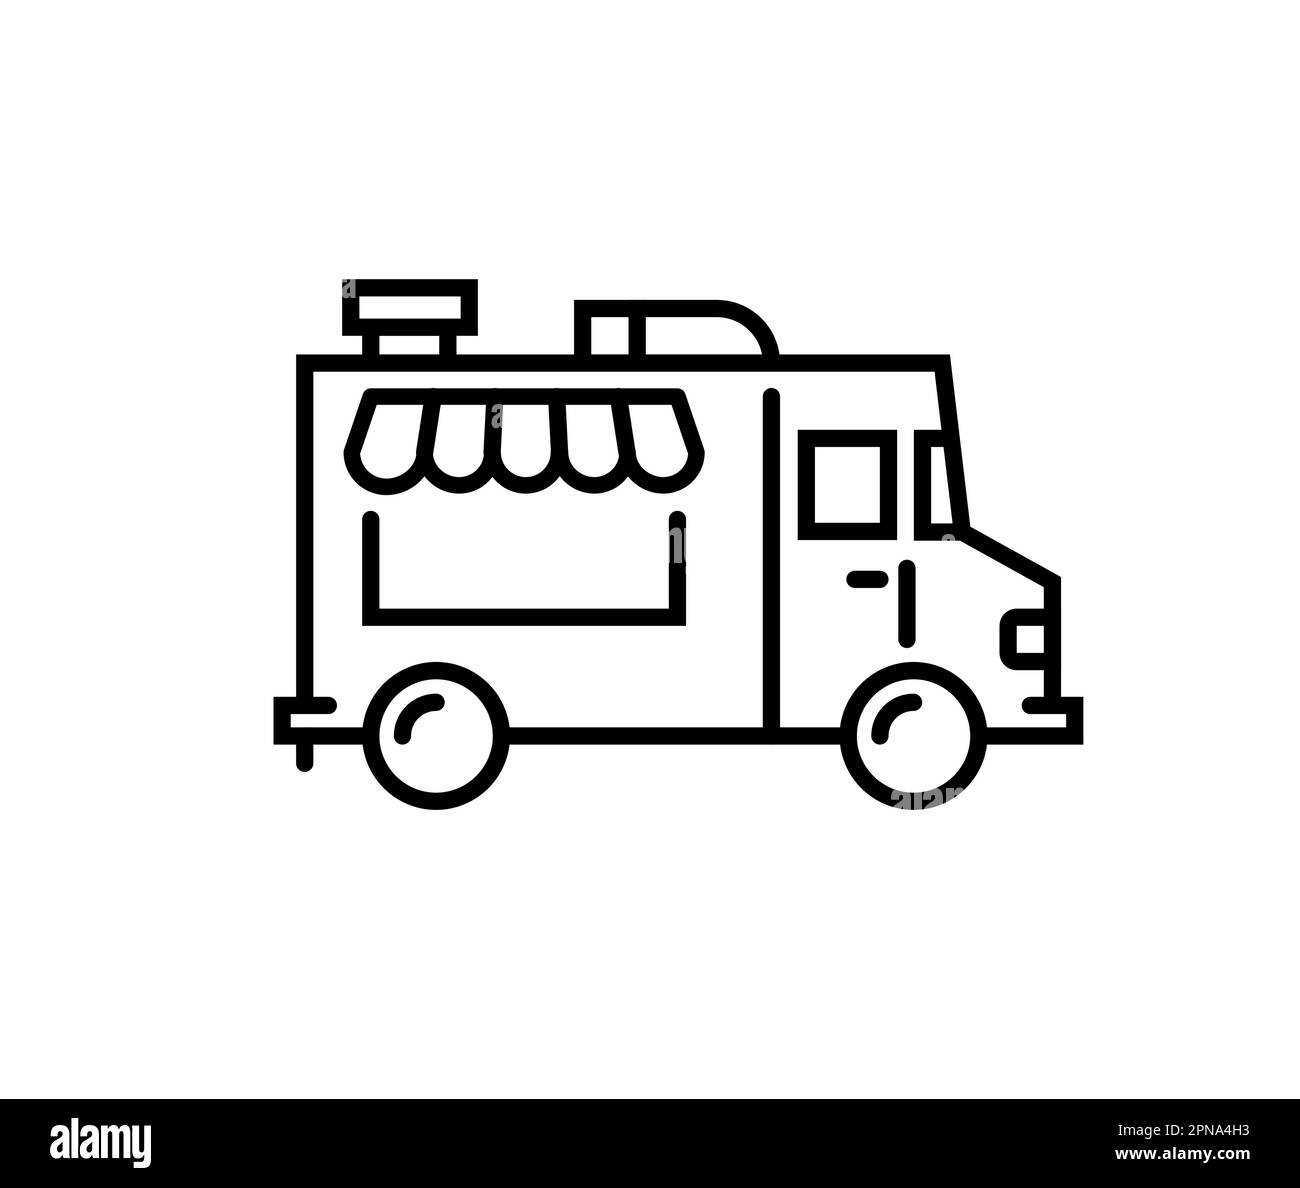 Food truck logo line icon. Vector foodtruck kitchen street van design icon. Stock Vector